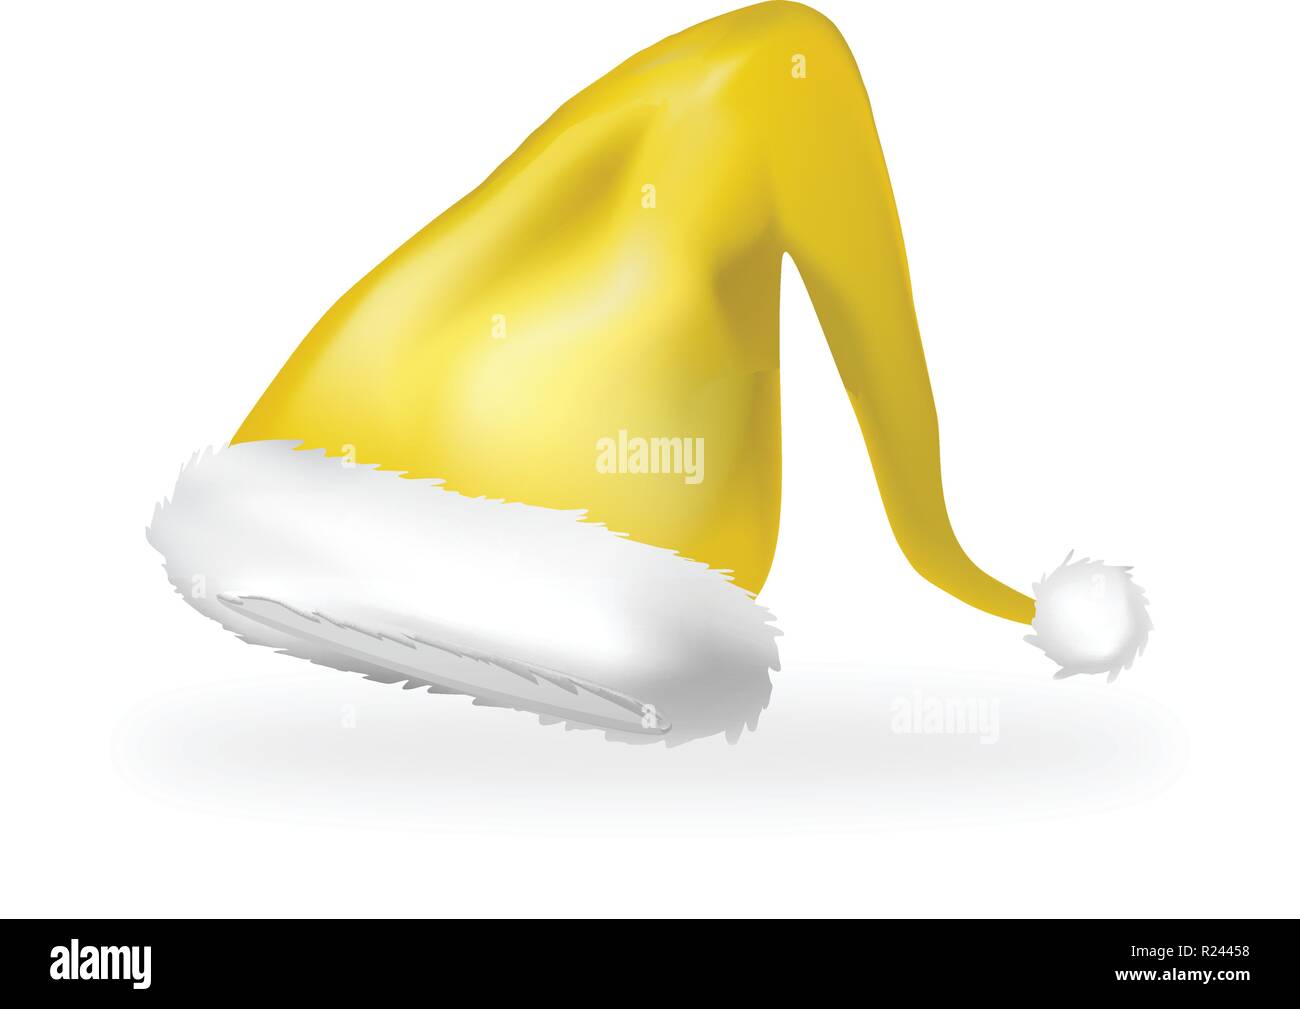 Natale Elf Hat icona simbolo di Design. Illustrazione di vettore isolato su sfondo bianco Illustrazione Vettoriale